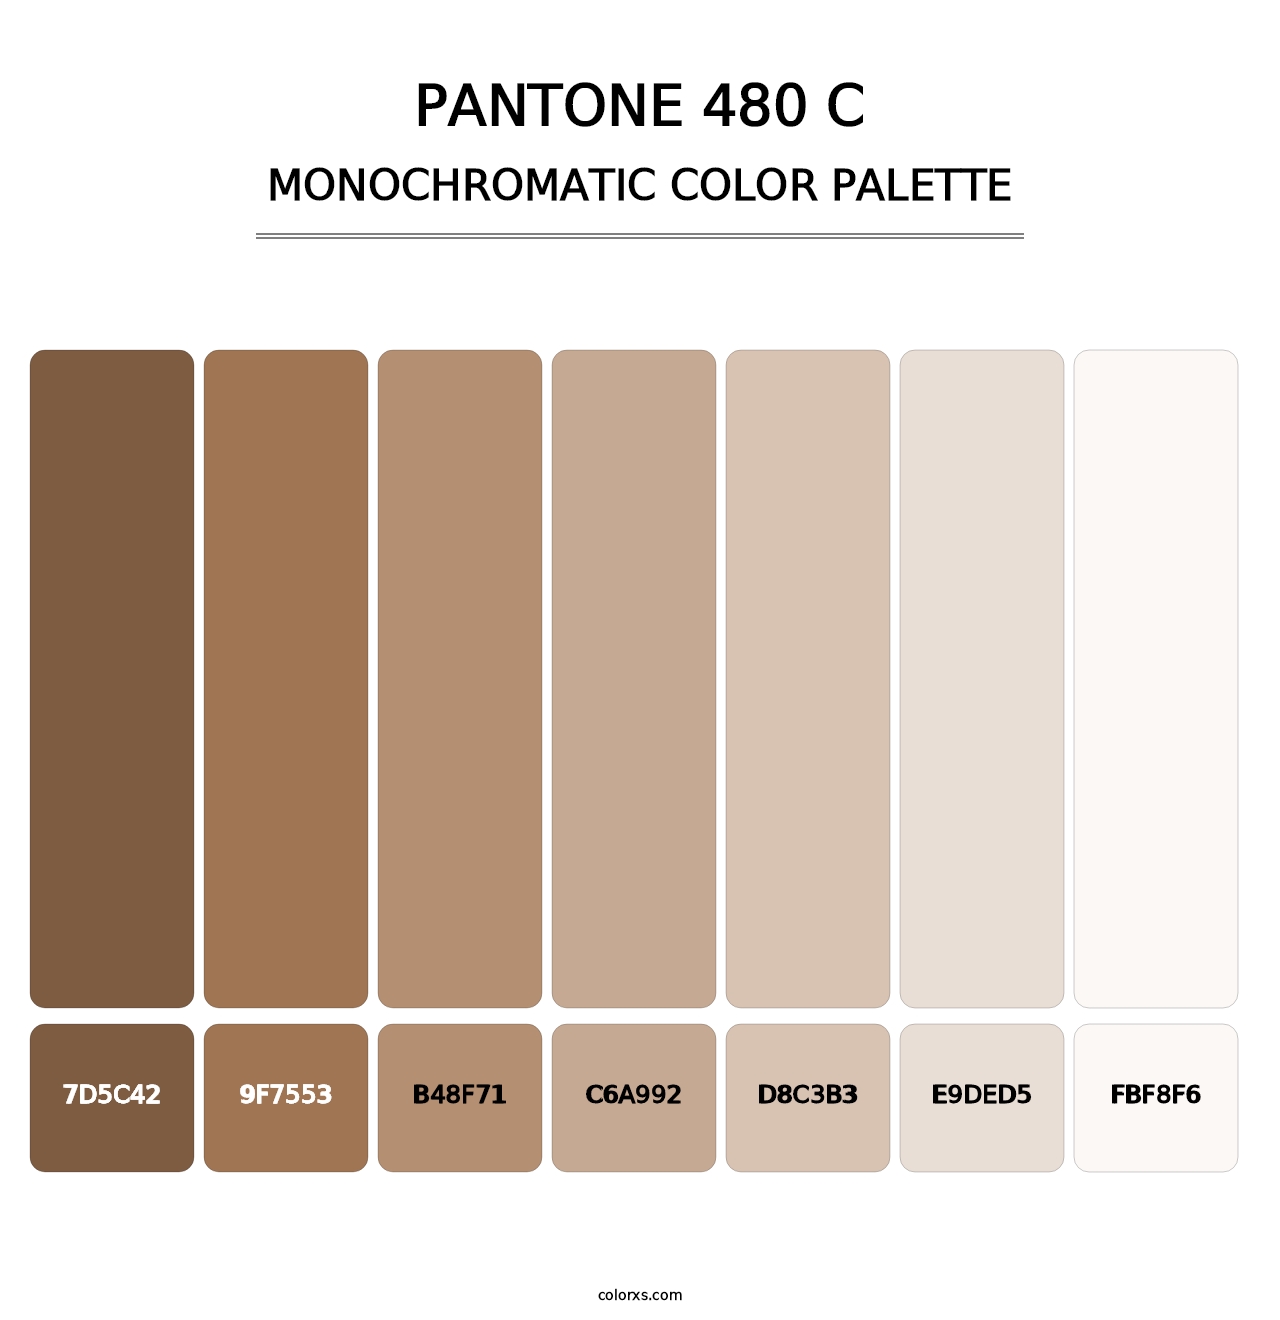 PANTONE 480 C - Monochromatic Color Palette